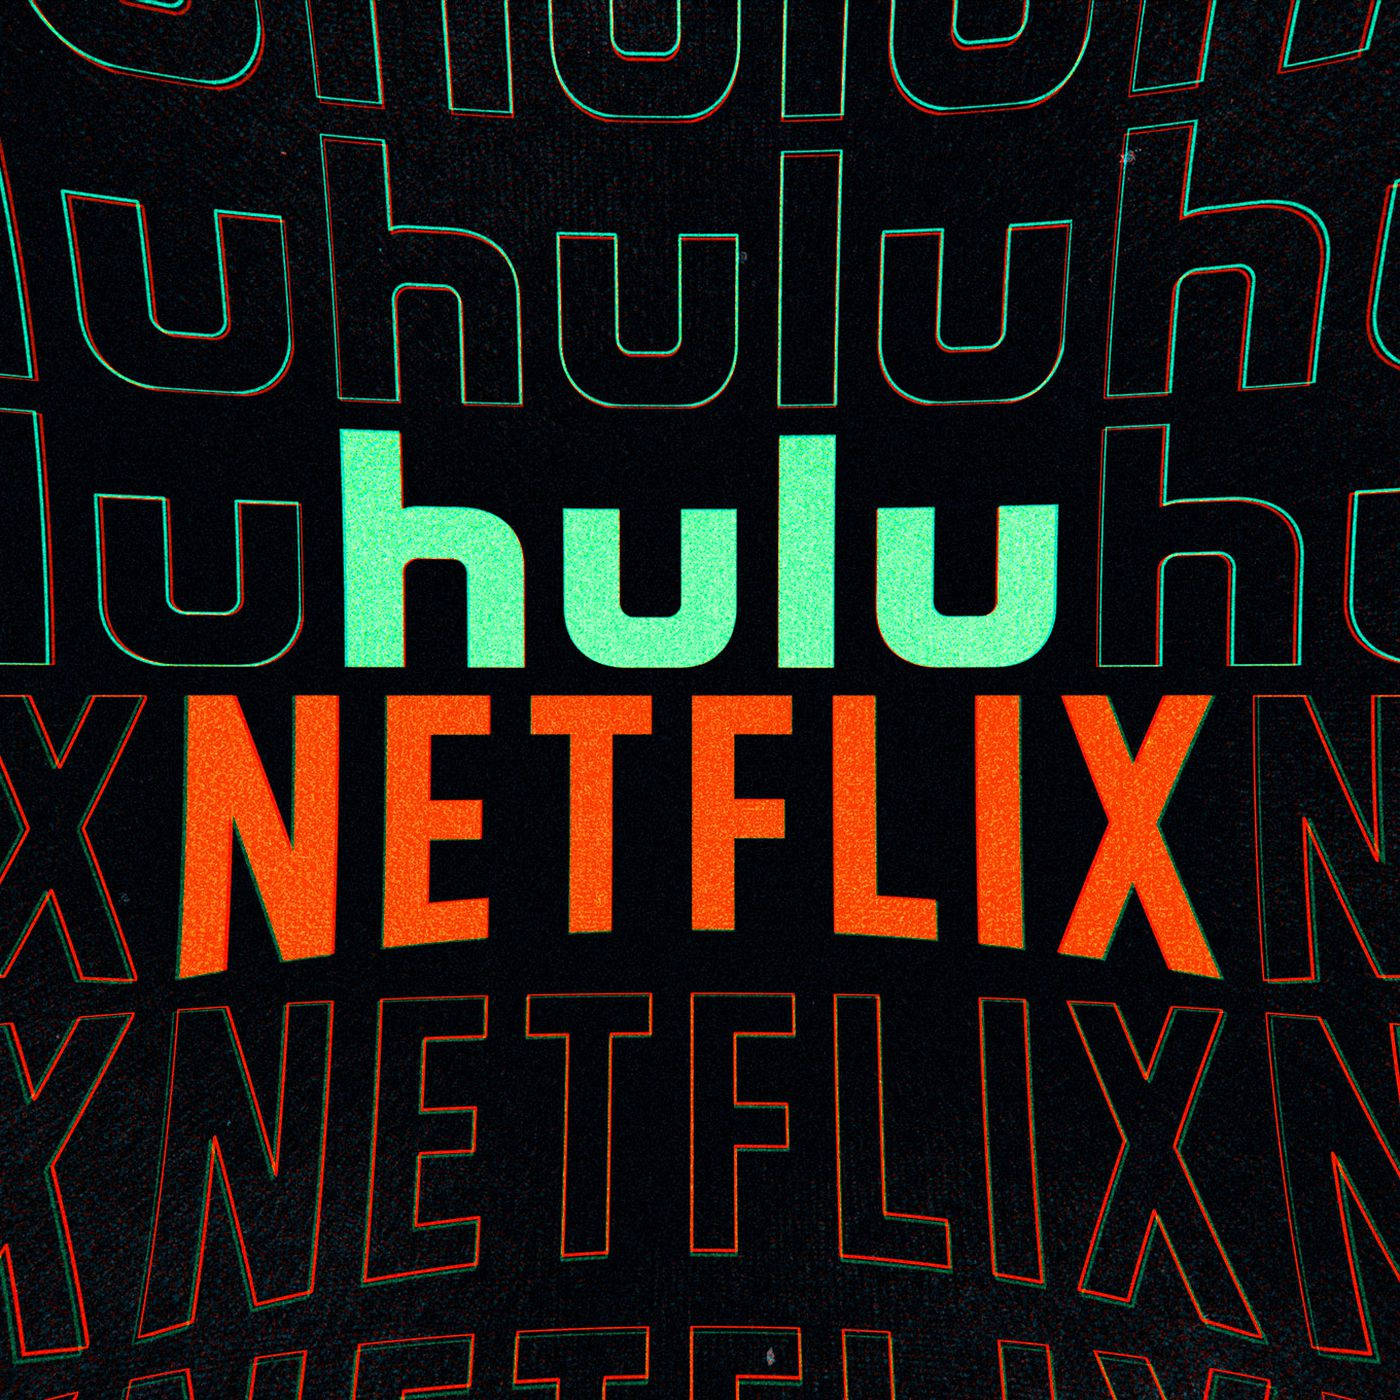 Hulu X Netflix Wallpaper